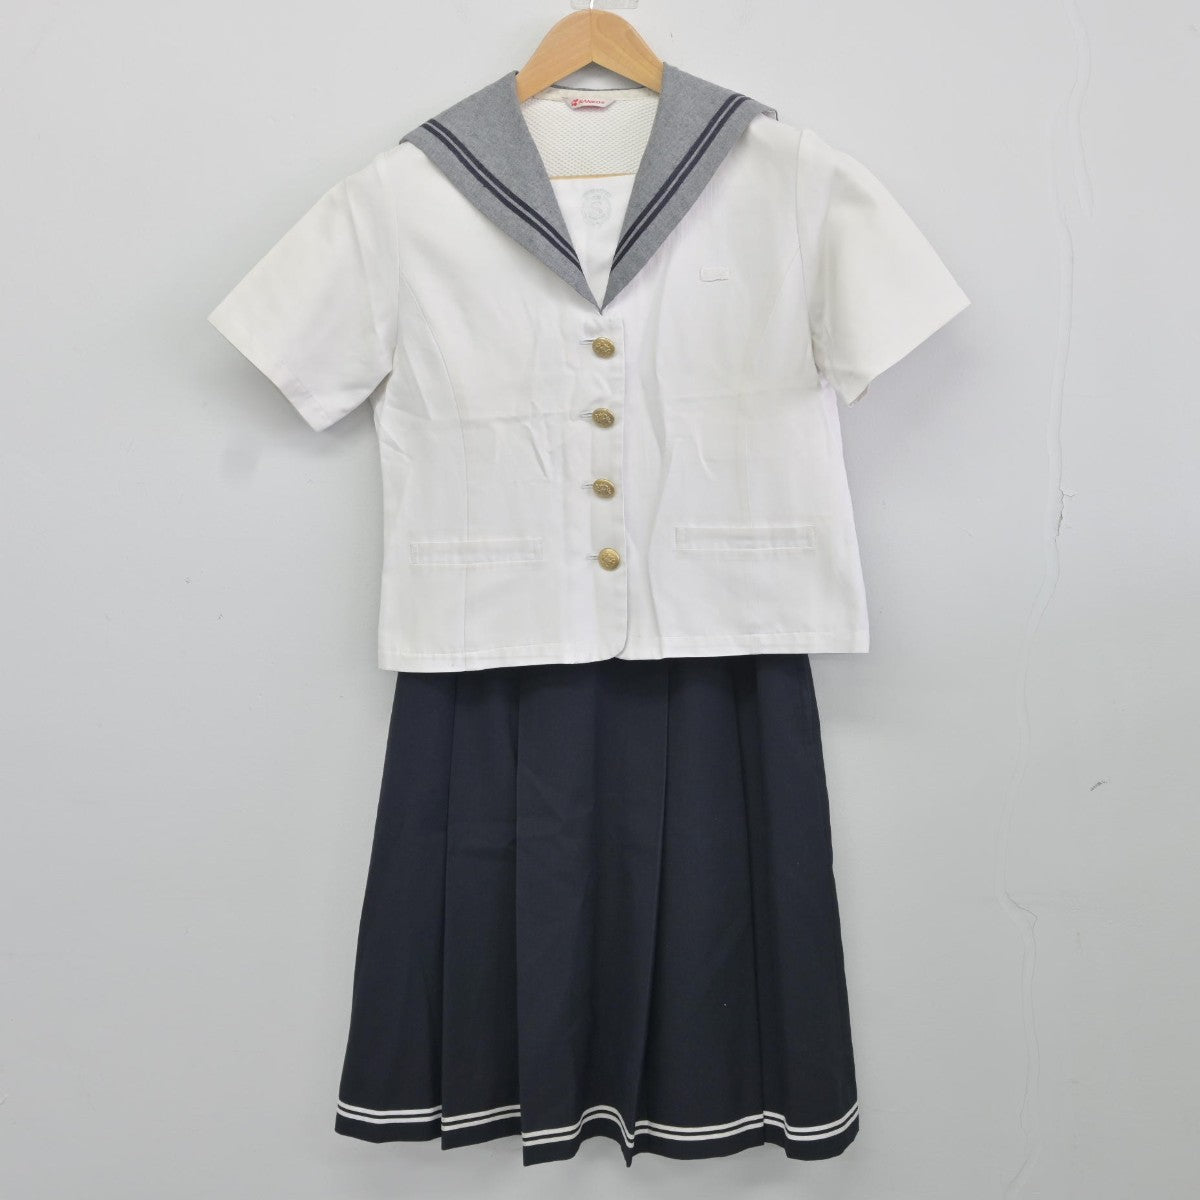 愛媛県私立済美高等学校・旧制服2点コスプレ - 衣装一式